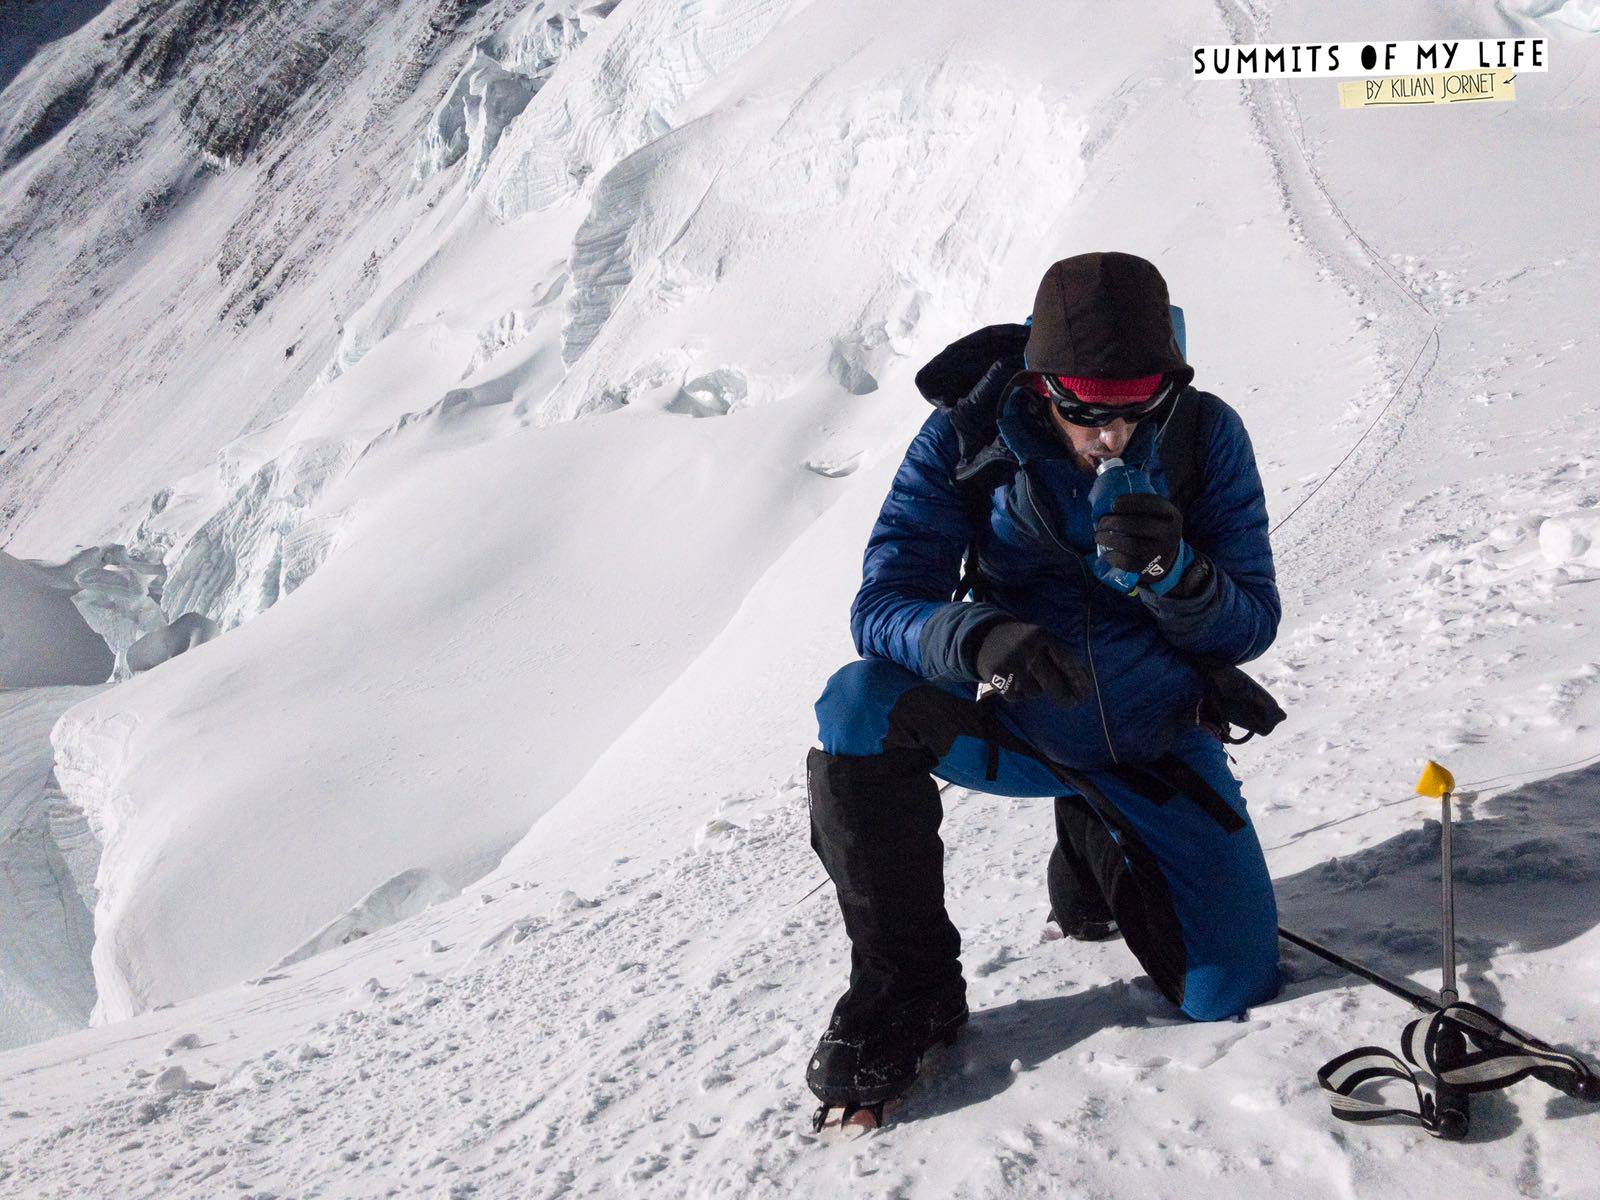 Le spécialiste de skyrunning, de ski-alpinisme et d'ultra-trail a fait l'aller-retour du camp de base au sommet en 38 heures.